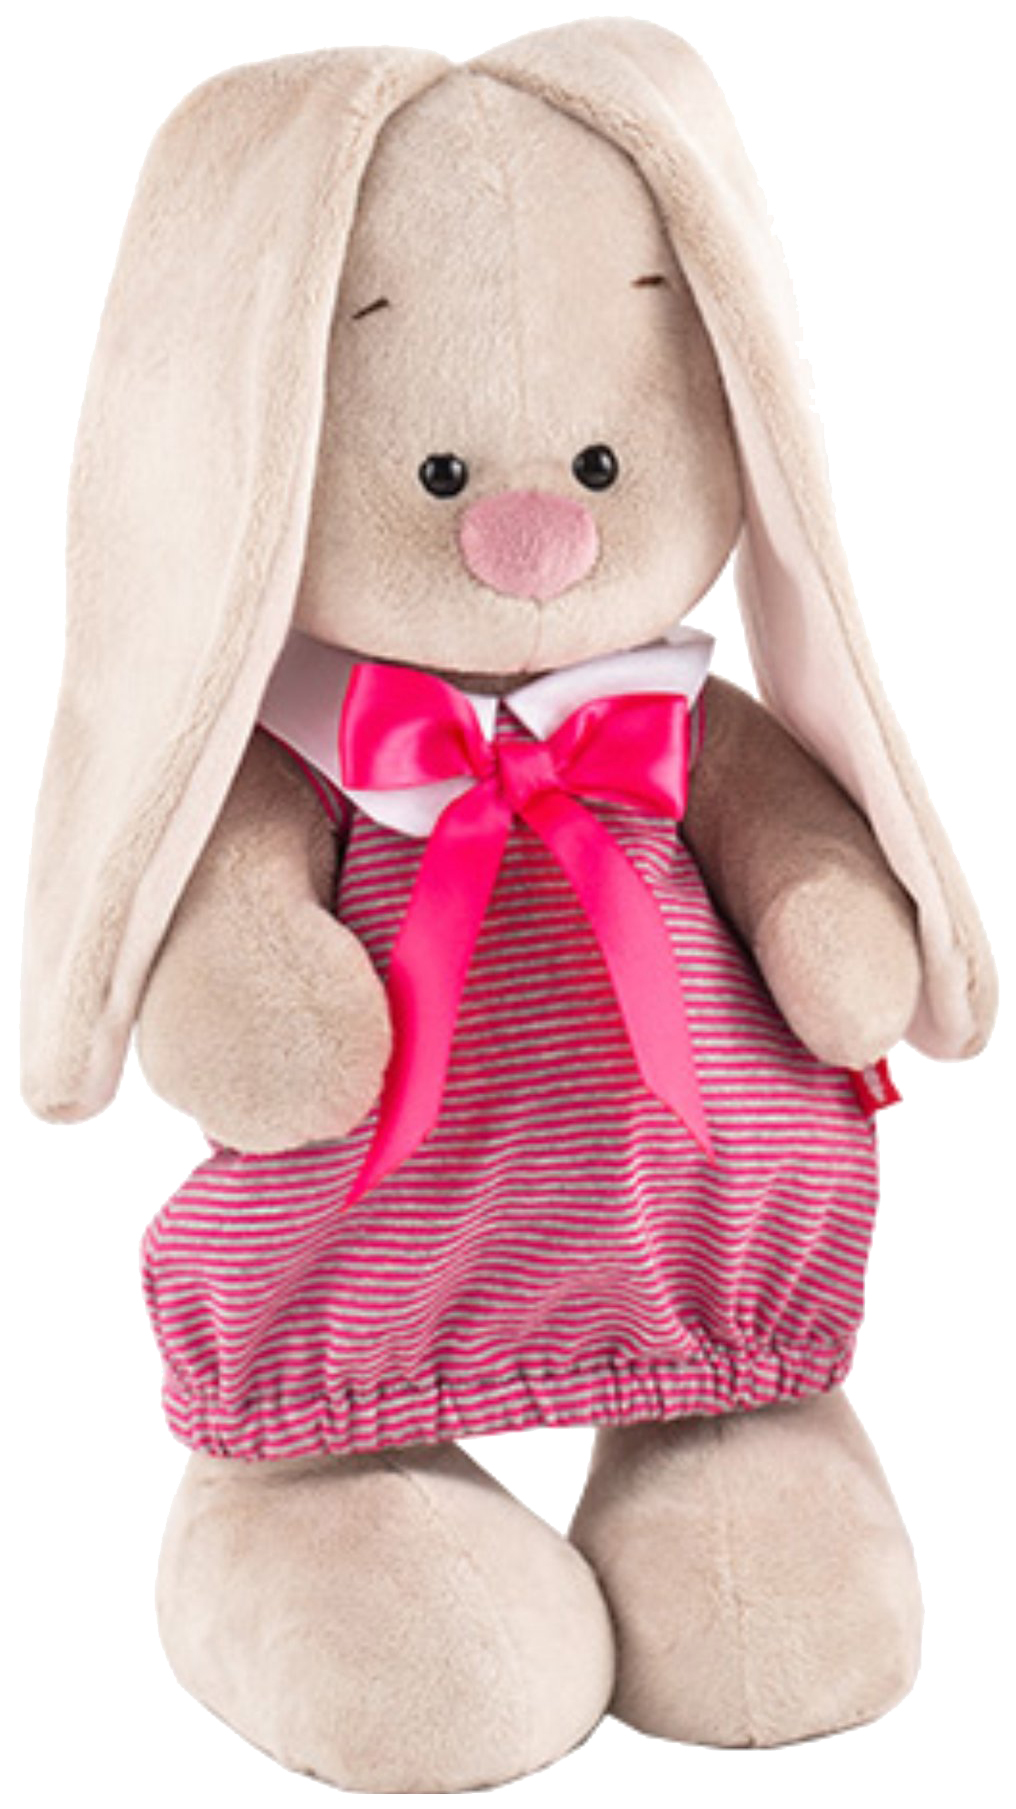 Мягкая игрушка BUDI BASA StS-257 Зайка Ми в платье в розовую полоску (малая) мягкая игрушка budi basa зайка ми большой в платье с белым воротником 34 см